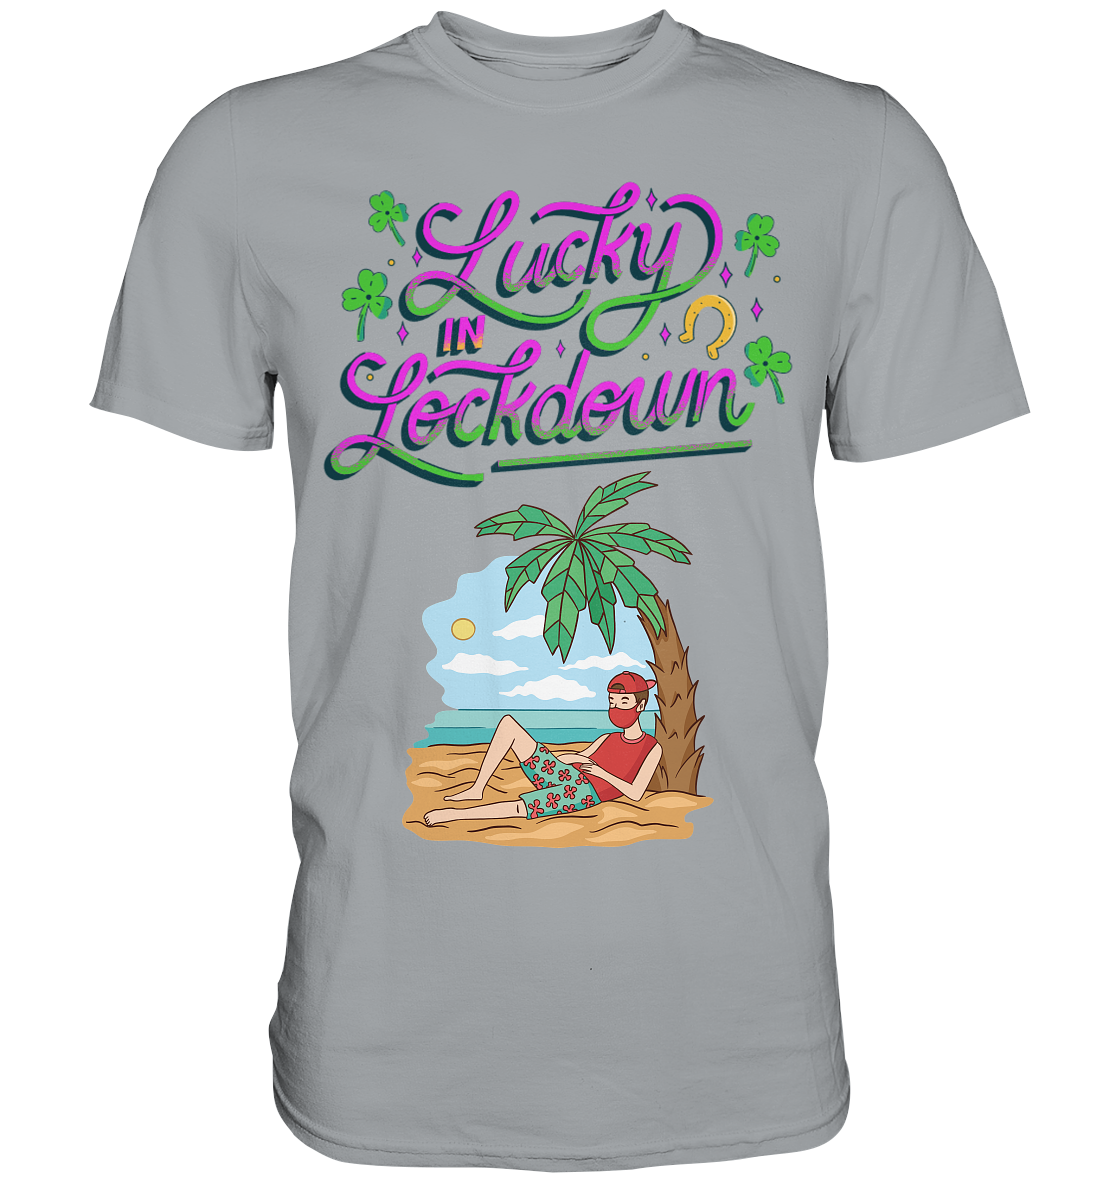 Lucky in Lockdown - Classic Shirt - Online Kaufhaus München